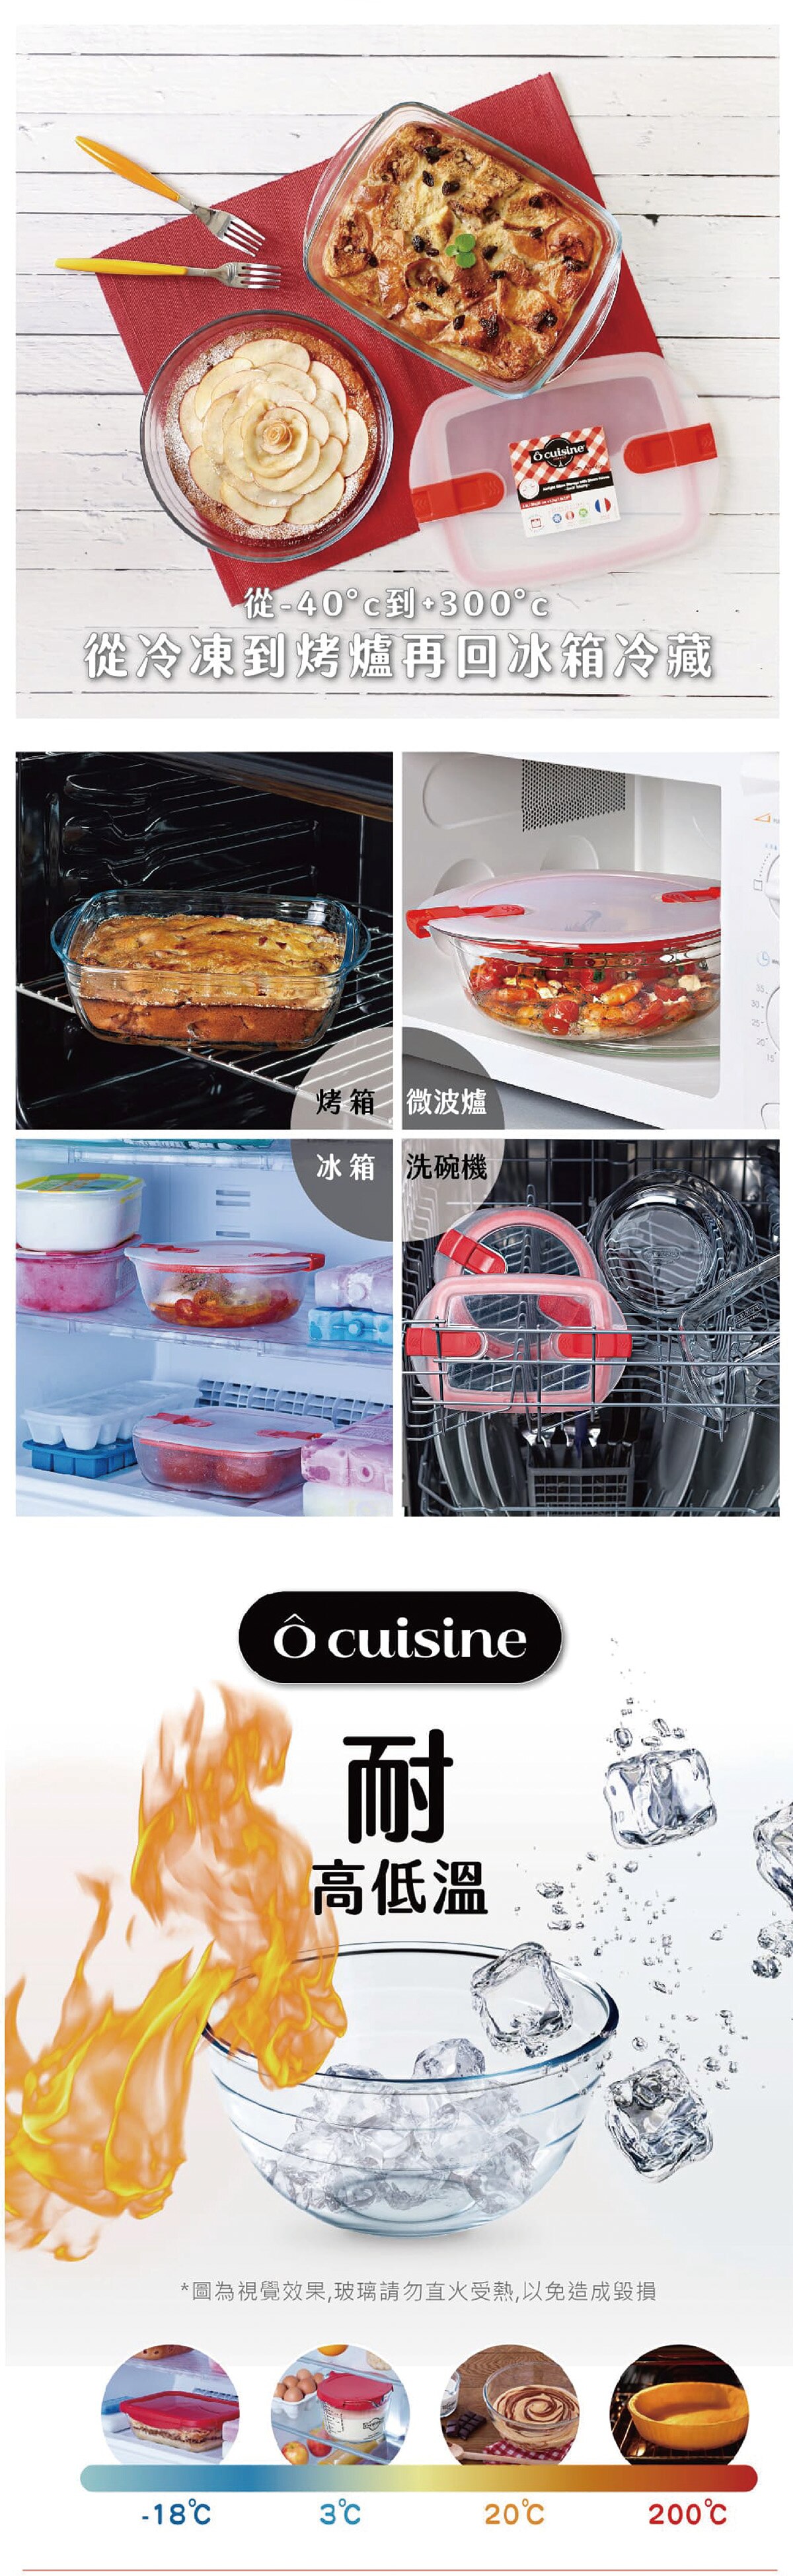 O'CUISINE 耐熱玻璃保鮮盒，從-40度到300度從冷凍到烤箱再回冰箱冷藏，適用於烤箱、微波爐、冰箱及洗碗機；耐高低溫。